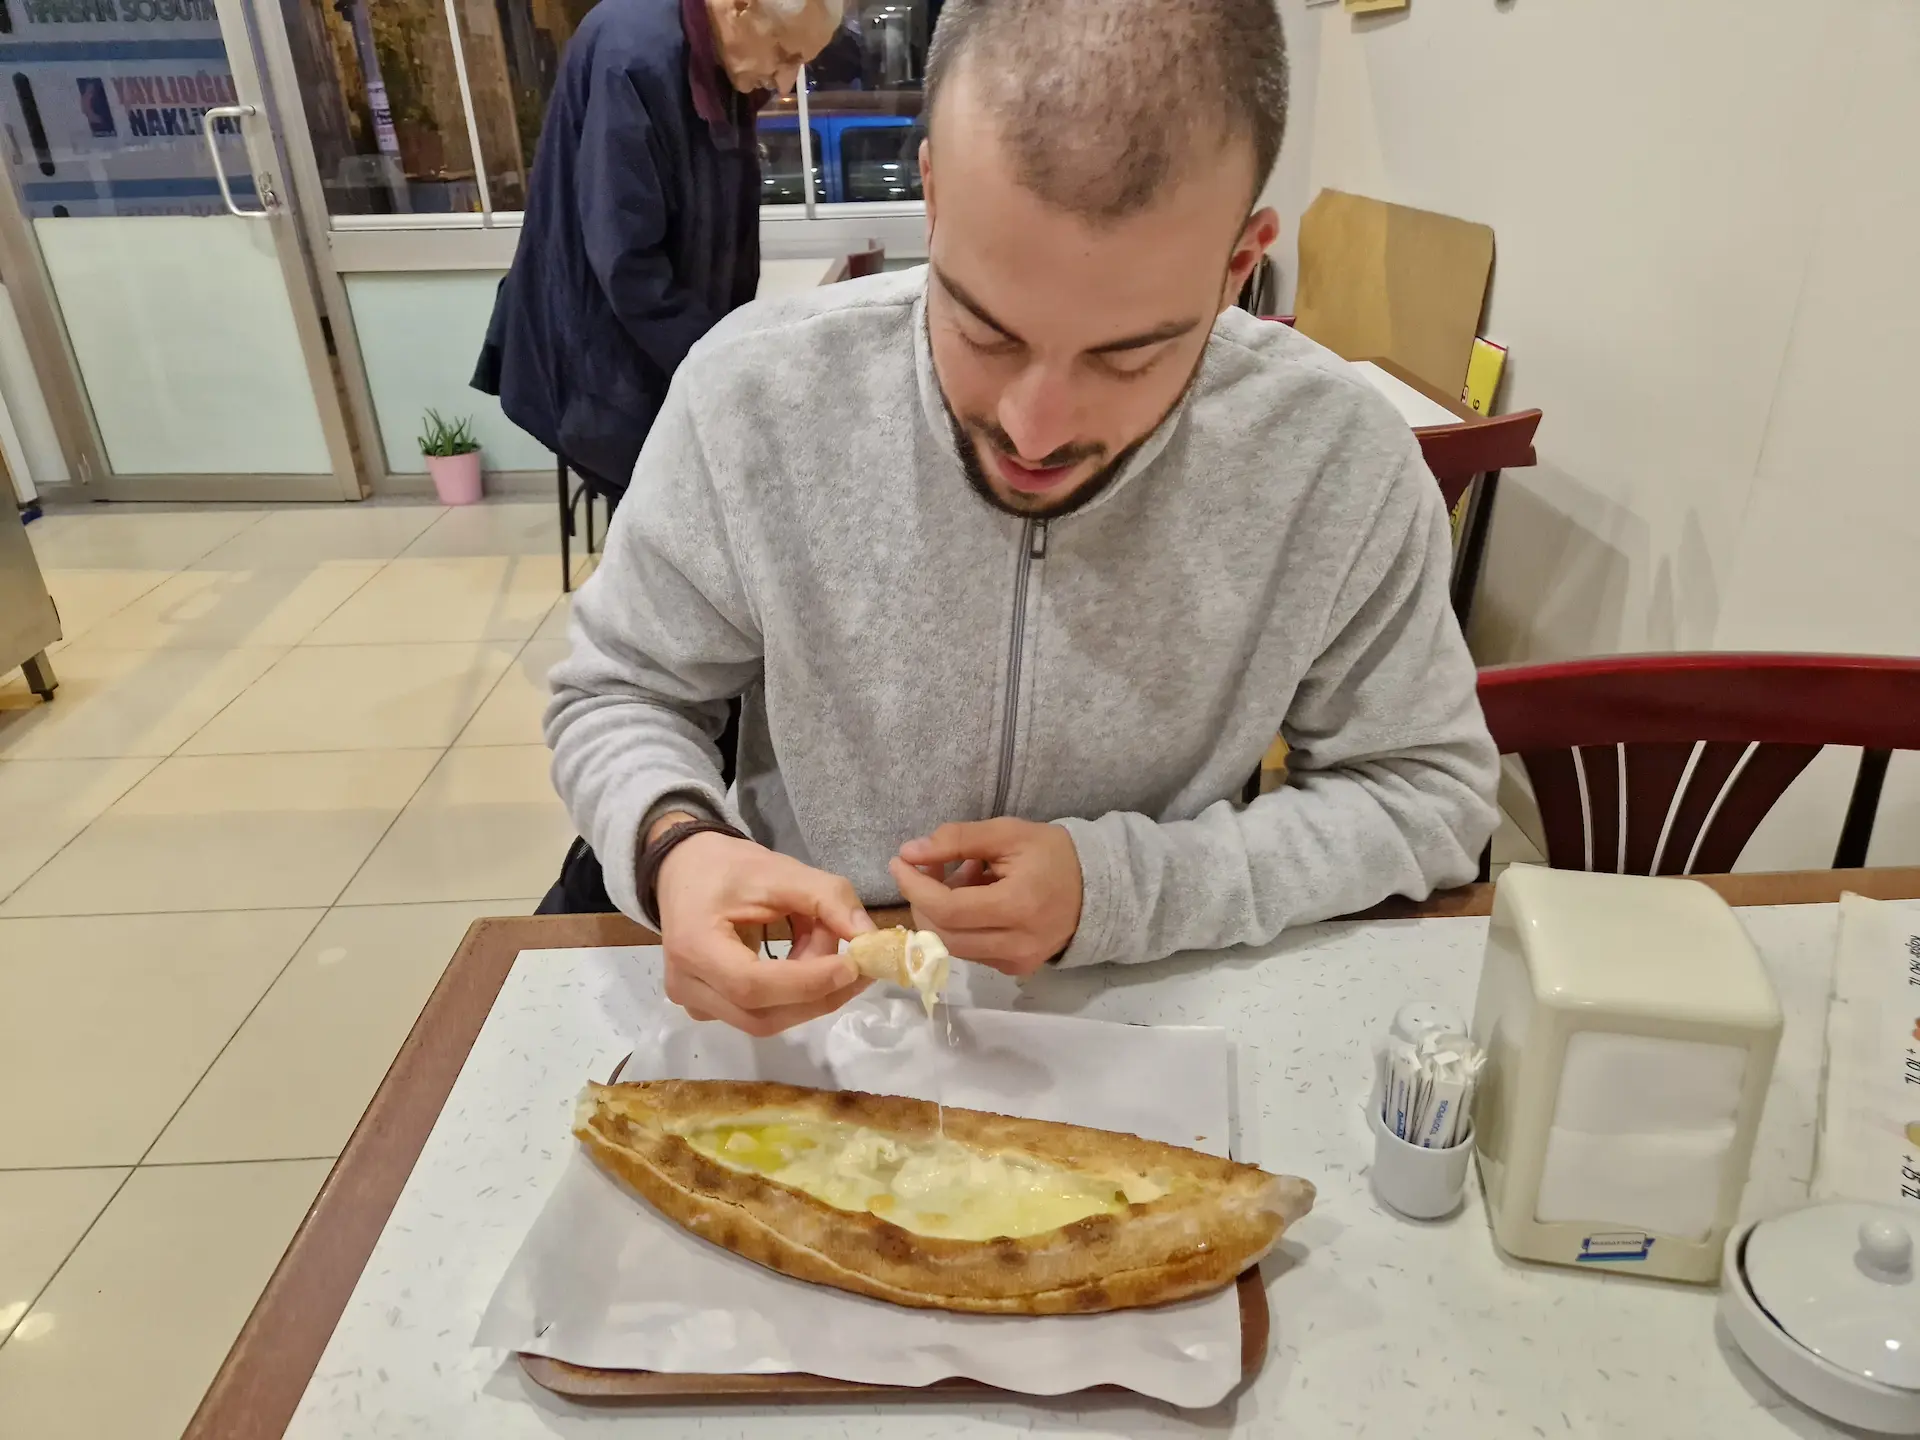 Robin entame une pide au fromage dans un petit resto de pide à Trabzon. Il sourit légèrement en plongeant son pain dans le mélange de fromage et de beurre.